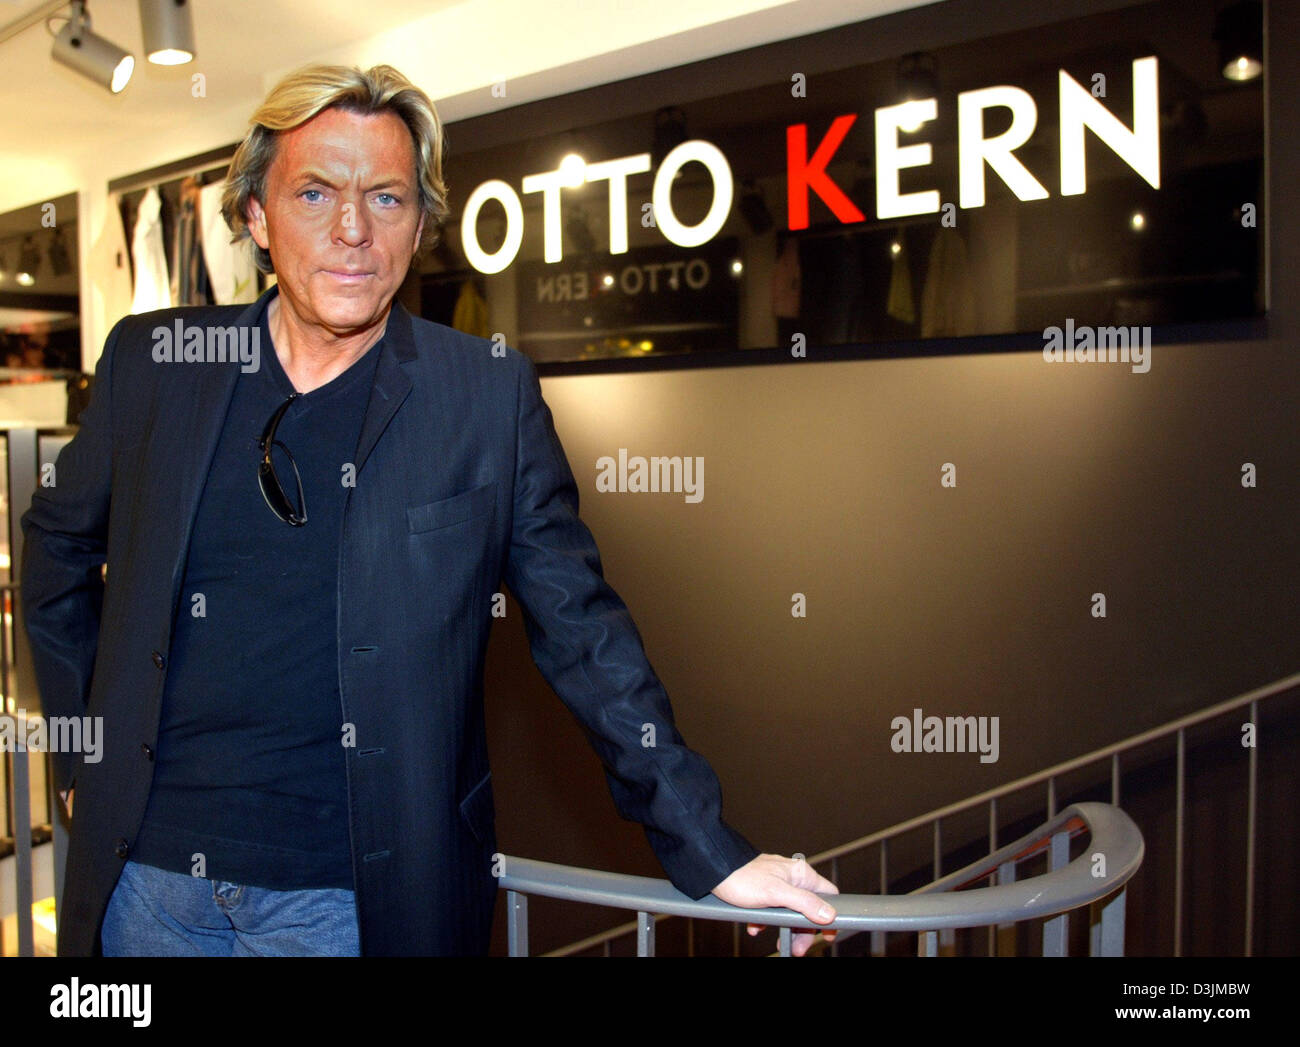 Dpa) - Mode-Unternehmer Otto Kern stellt sich vor mit seinen Namen auf  seinen neuen Store in Freiburg im Breisgau, 4. März 2005 schreiben. Kern  ist eines der berühmtesten deutschen Modedesigner und Herren-Ausstatter